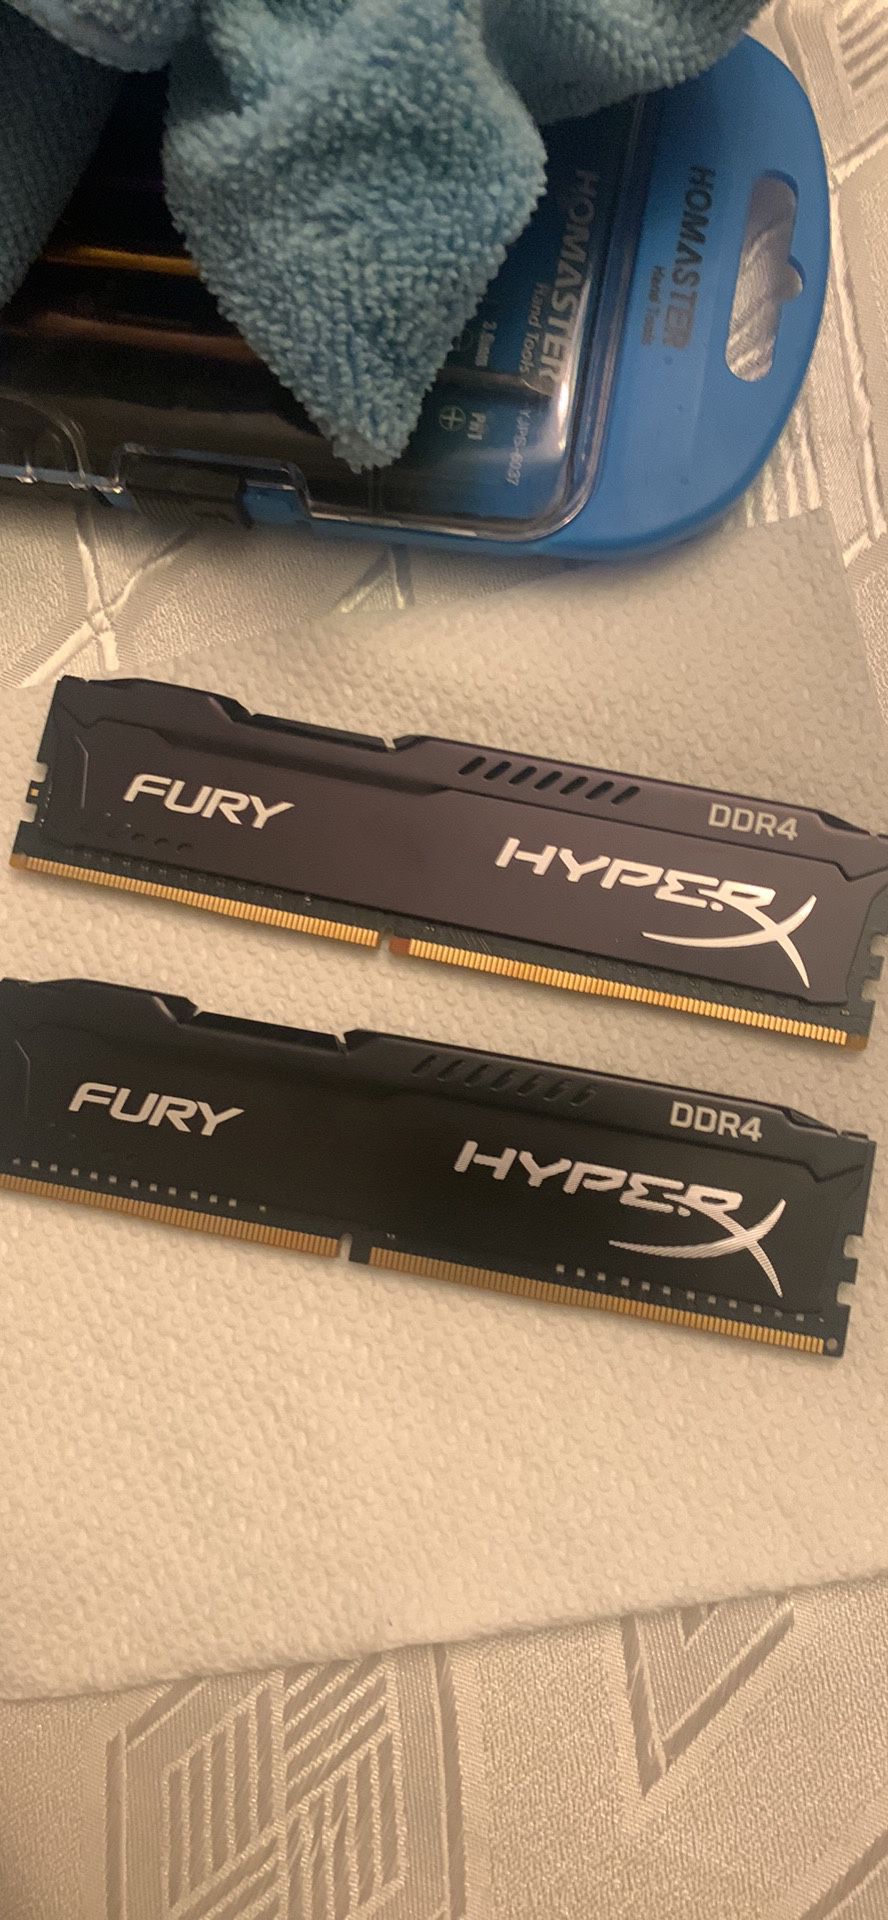 HyperX Fury 2400mhz DDR4 (2x8gb) RAM